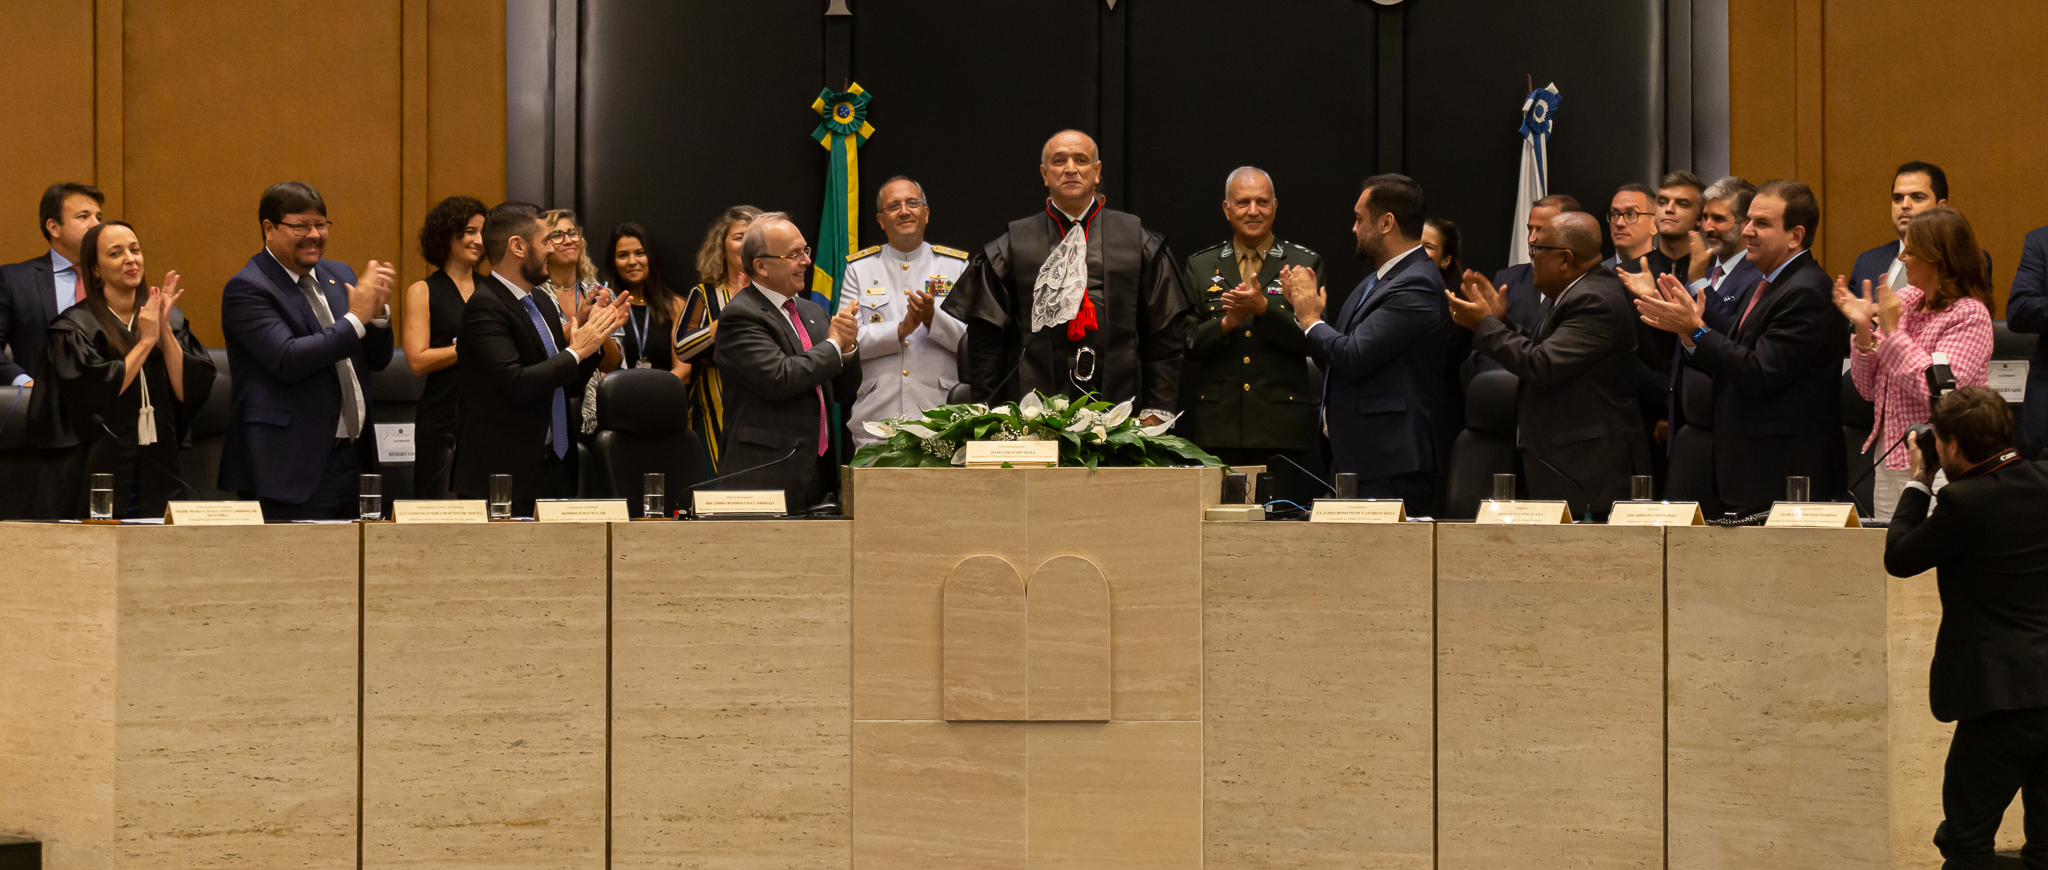 Imagem da solenidade realizada no Órgão Especial. Todos de pé aplaudindo o novo presidente do TRE-RJ